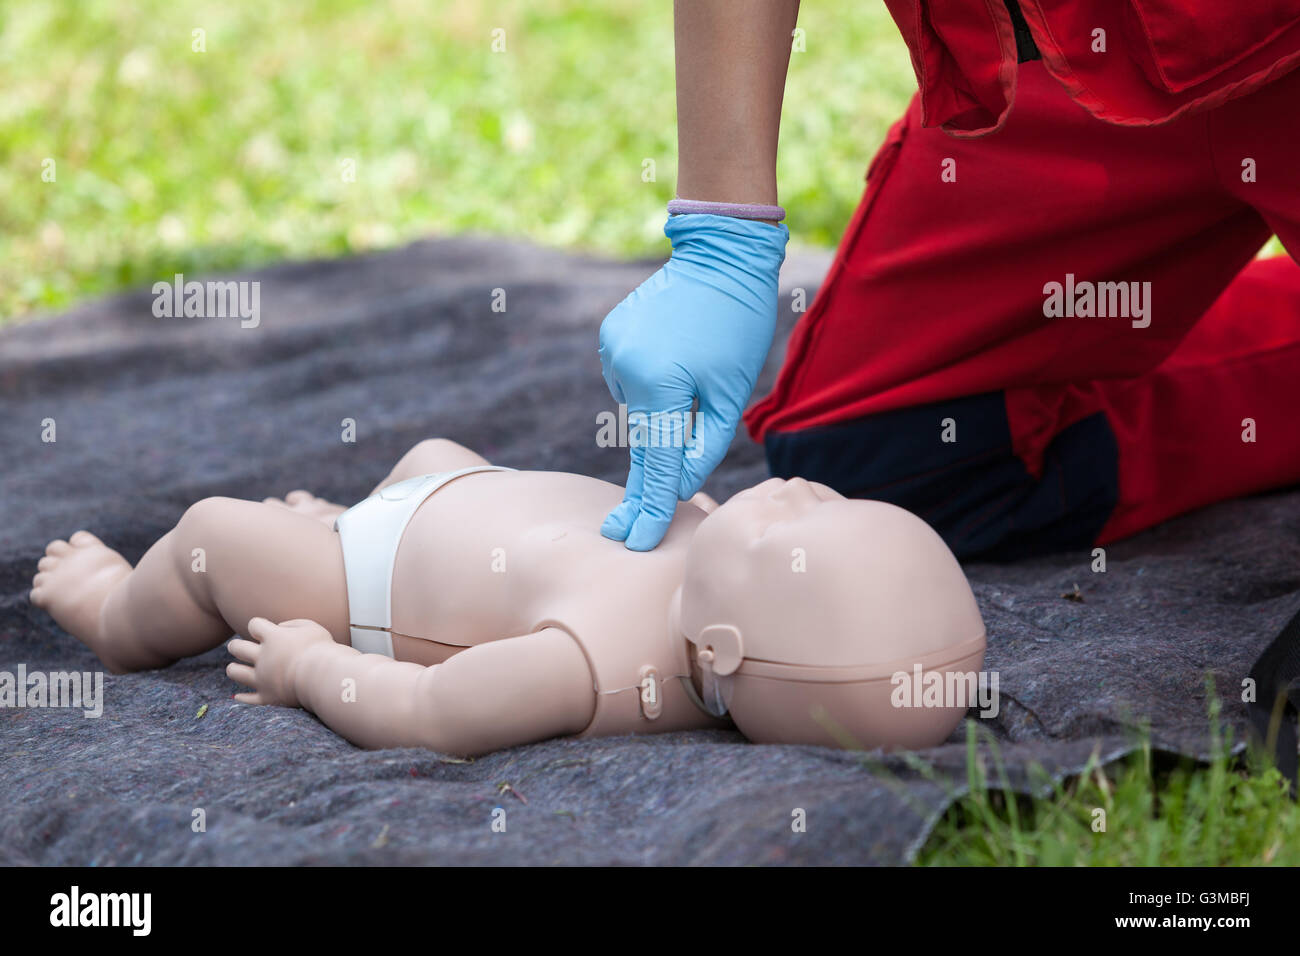 Baby CPR manichino di formazione di primo soccorso. La rianimazione cardiopolmonare - CPR. Il massaggio cardiaco. Foto Stock